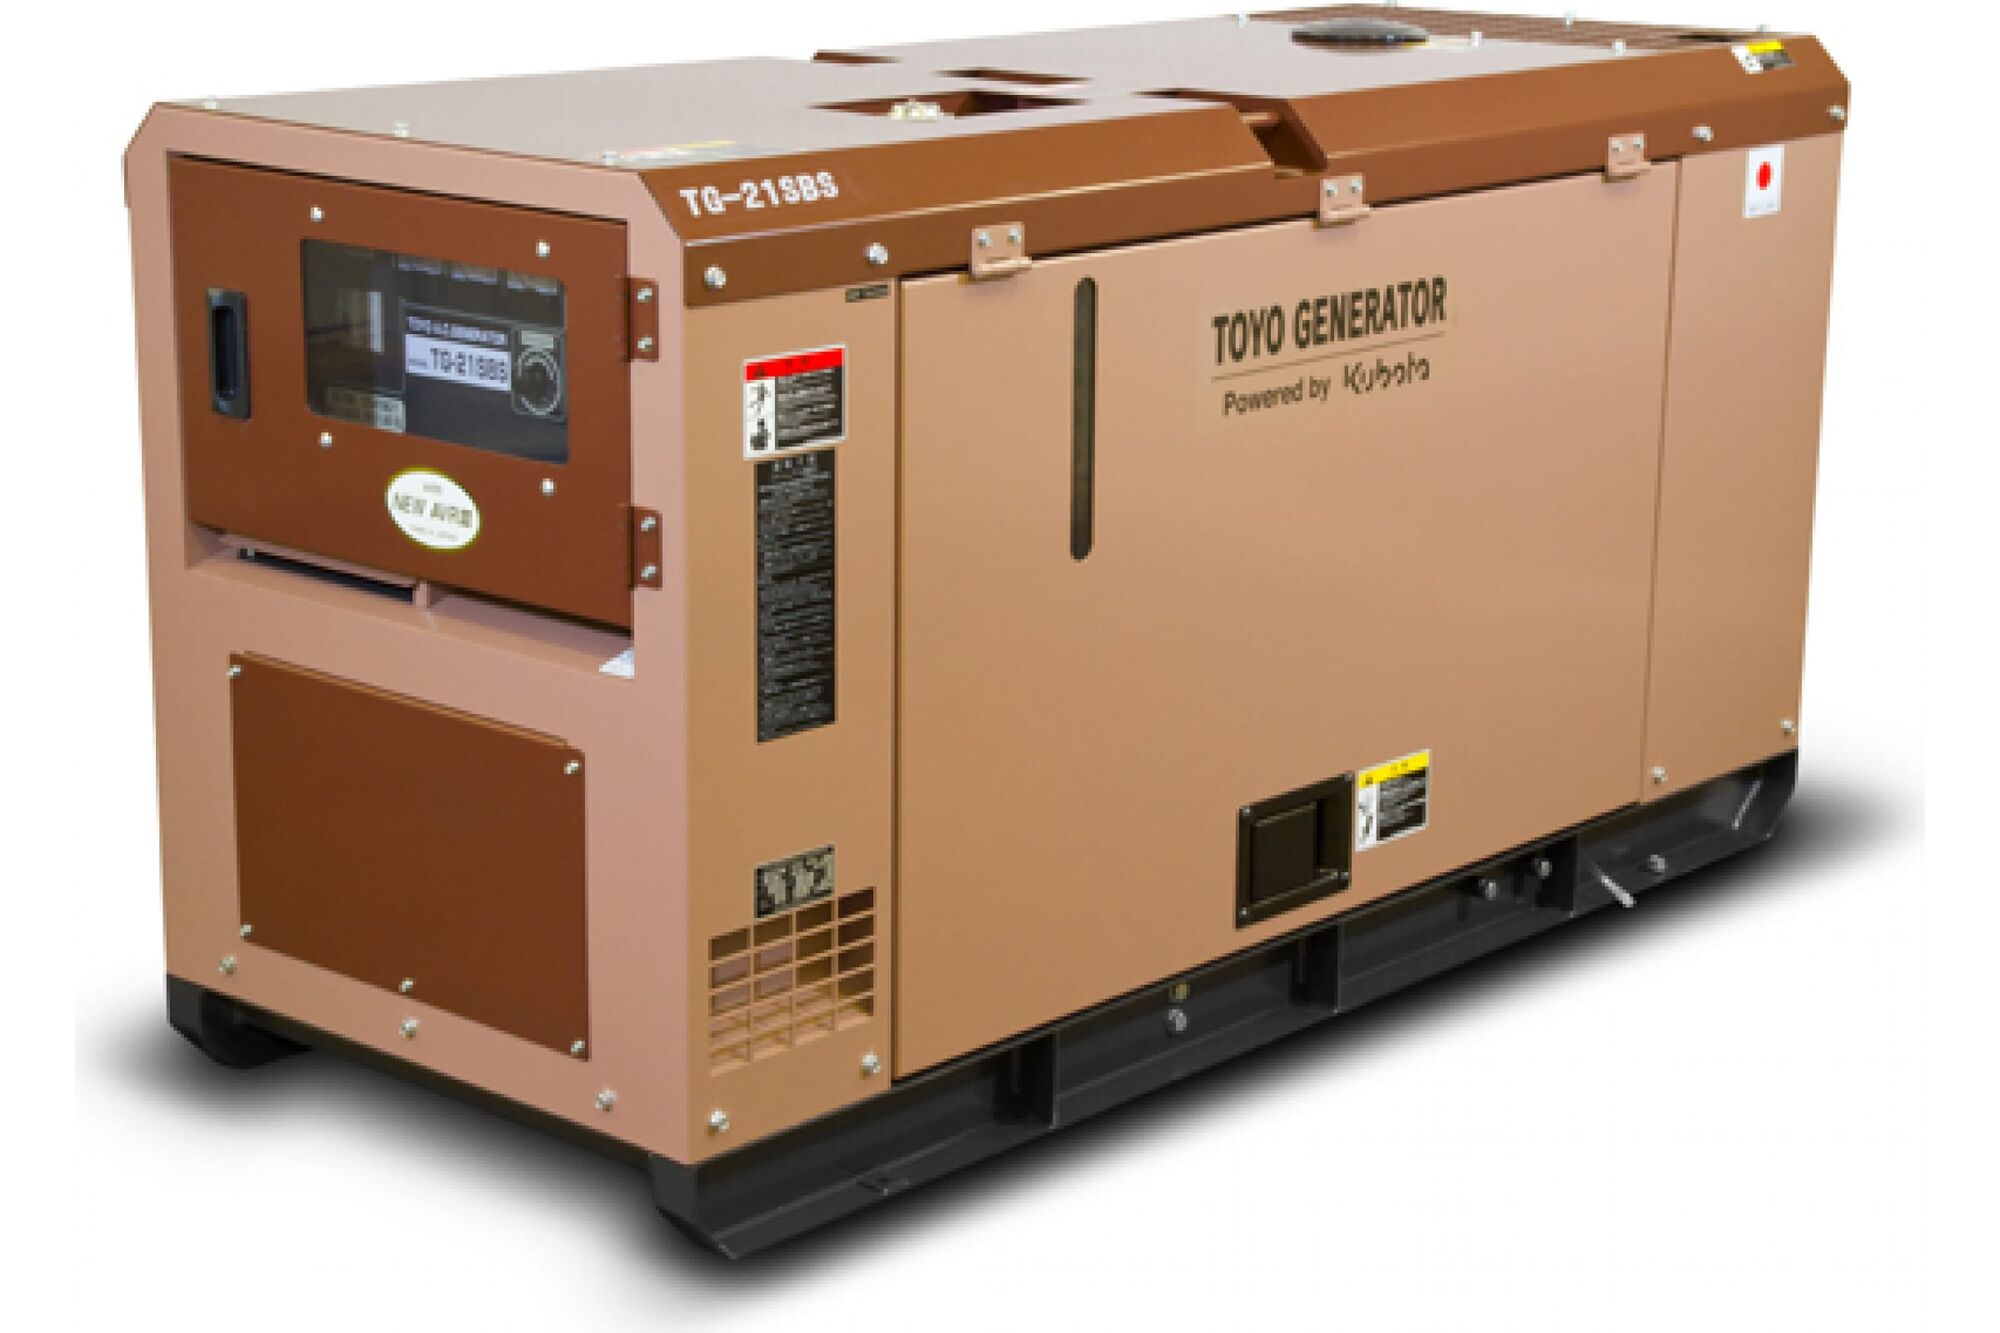 Дизельный генератор Toyo TG-21SBS 00-00002518